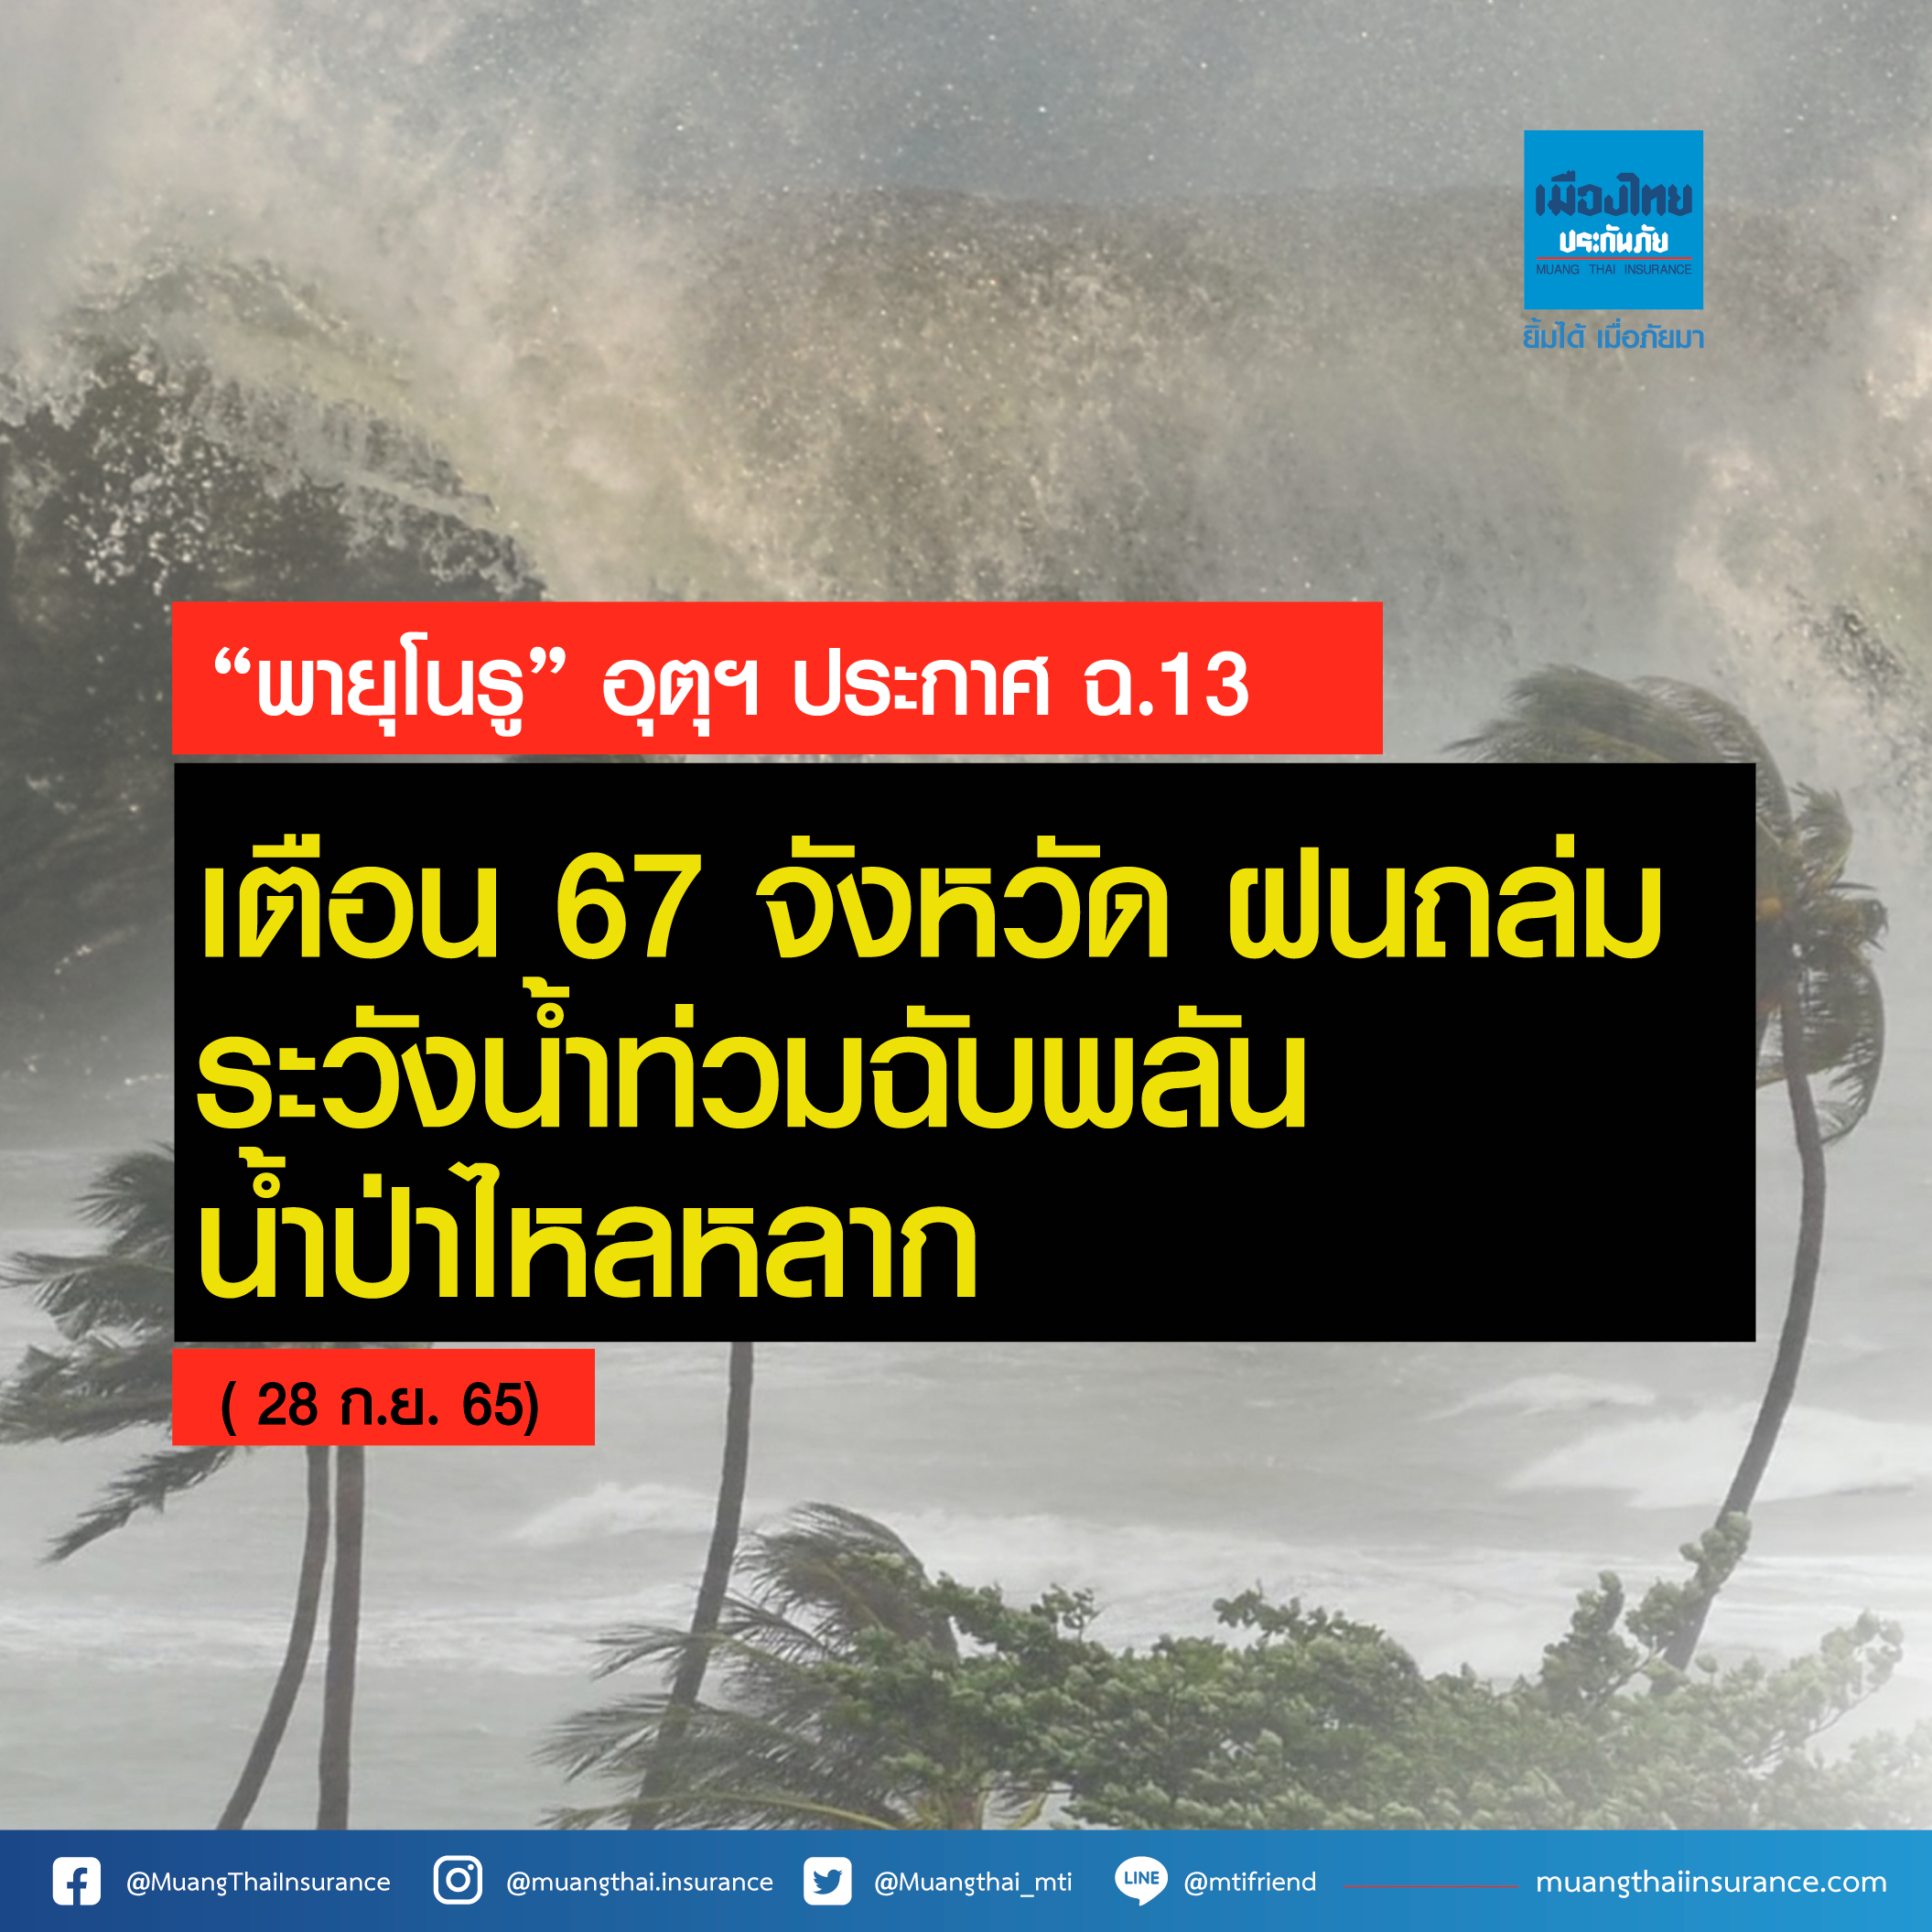 กรมอุตุฯ ประกาศ ฉ.13 “พายุ โนรู” เตือน 67 จังหวัด ฝนถล่ม ระวังน้ำท่วมฉับพลัน น้ำป่าไหลหลาก